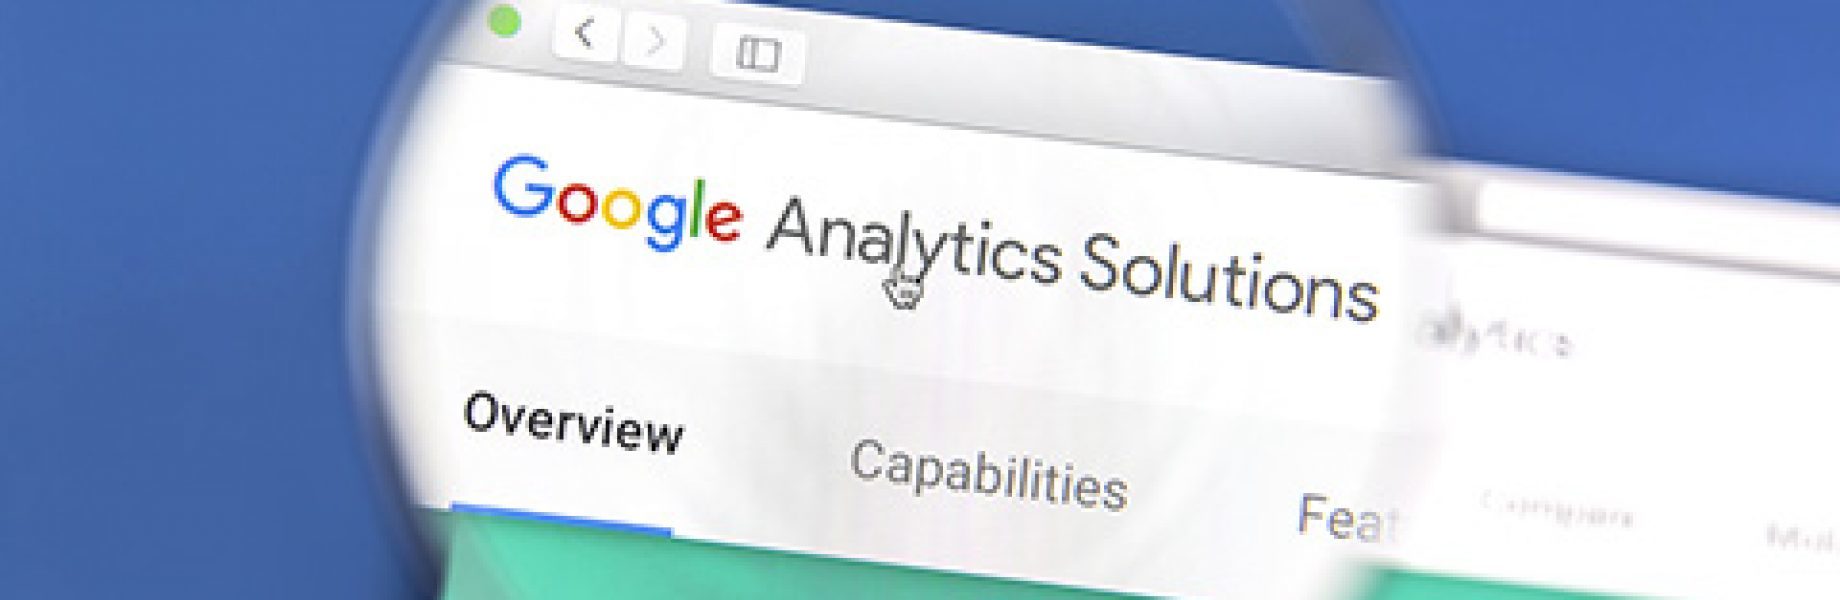 Seguir el tráfico que proviene de appvizer en Google Analytics